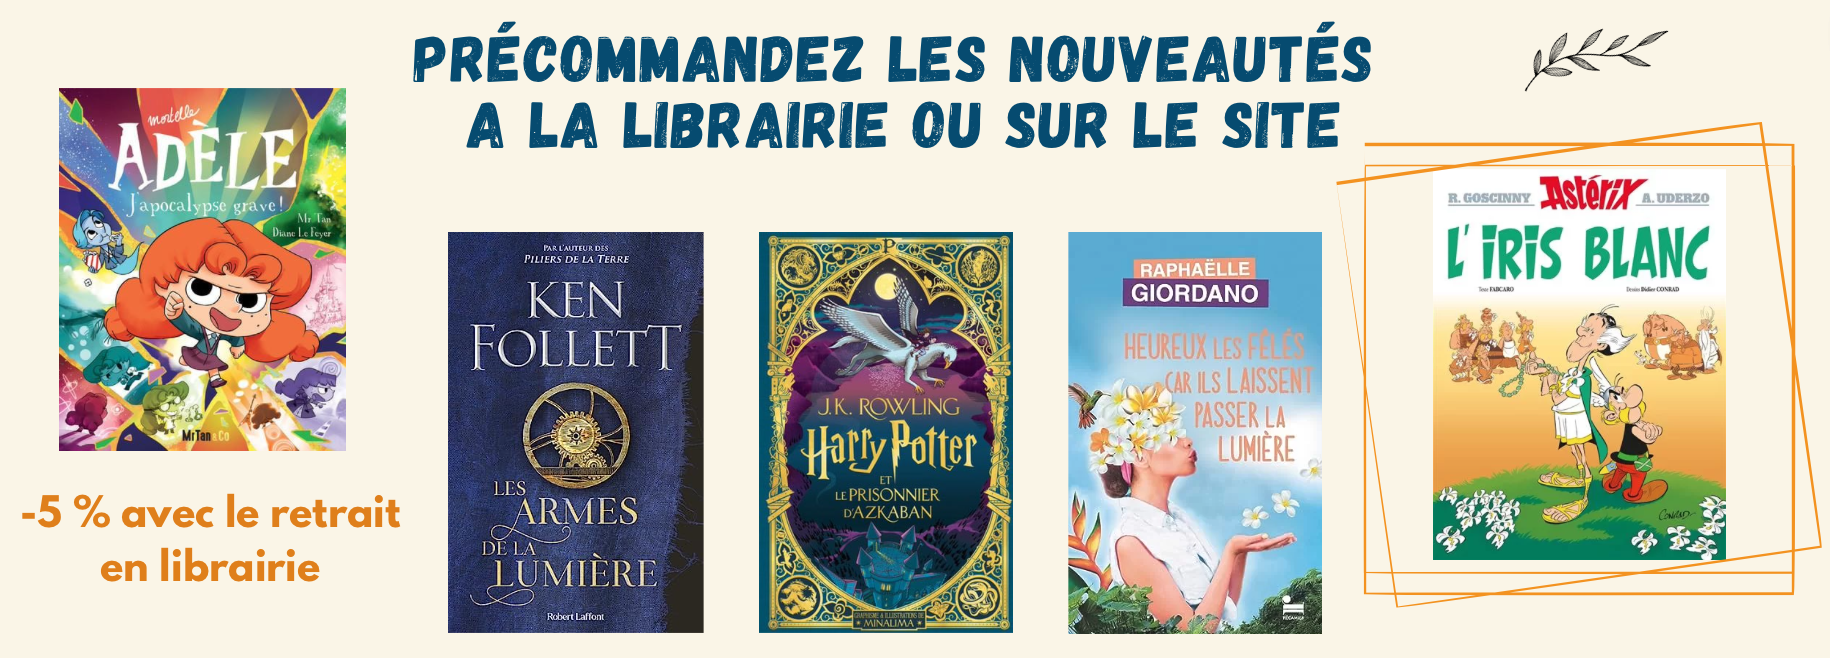 lirandco librairie neuf et occasion livres pas cher librairie le Teil Ardèche